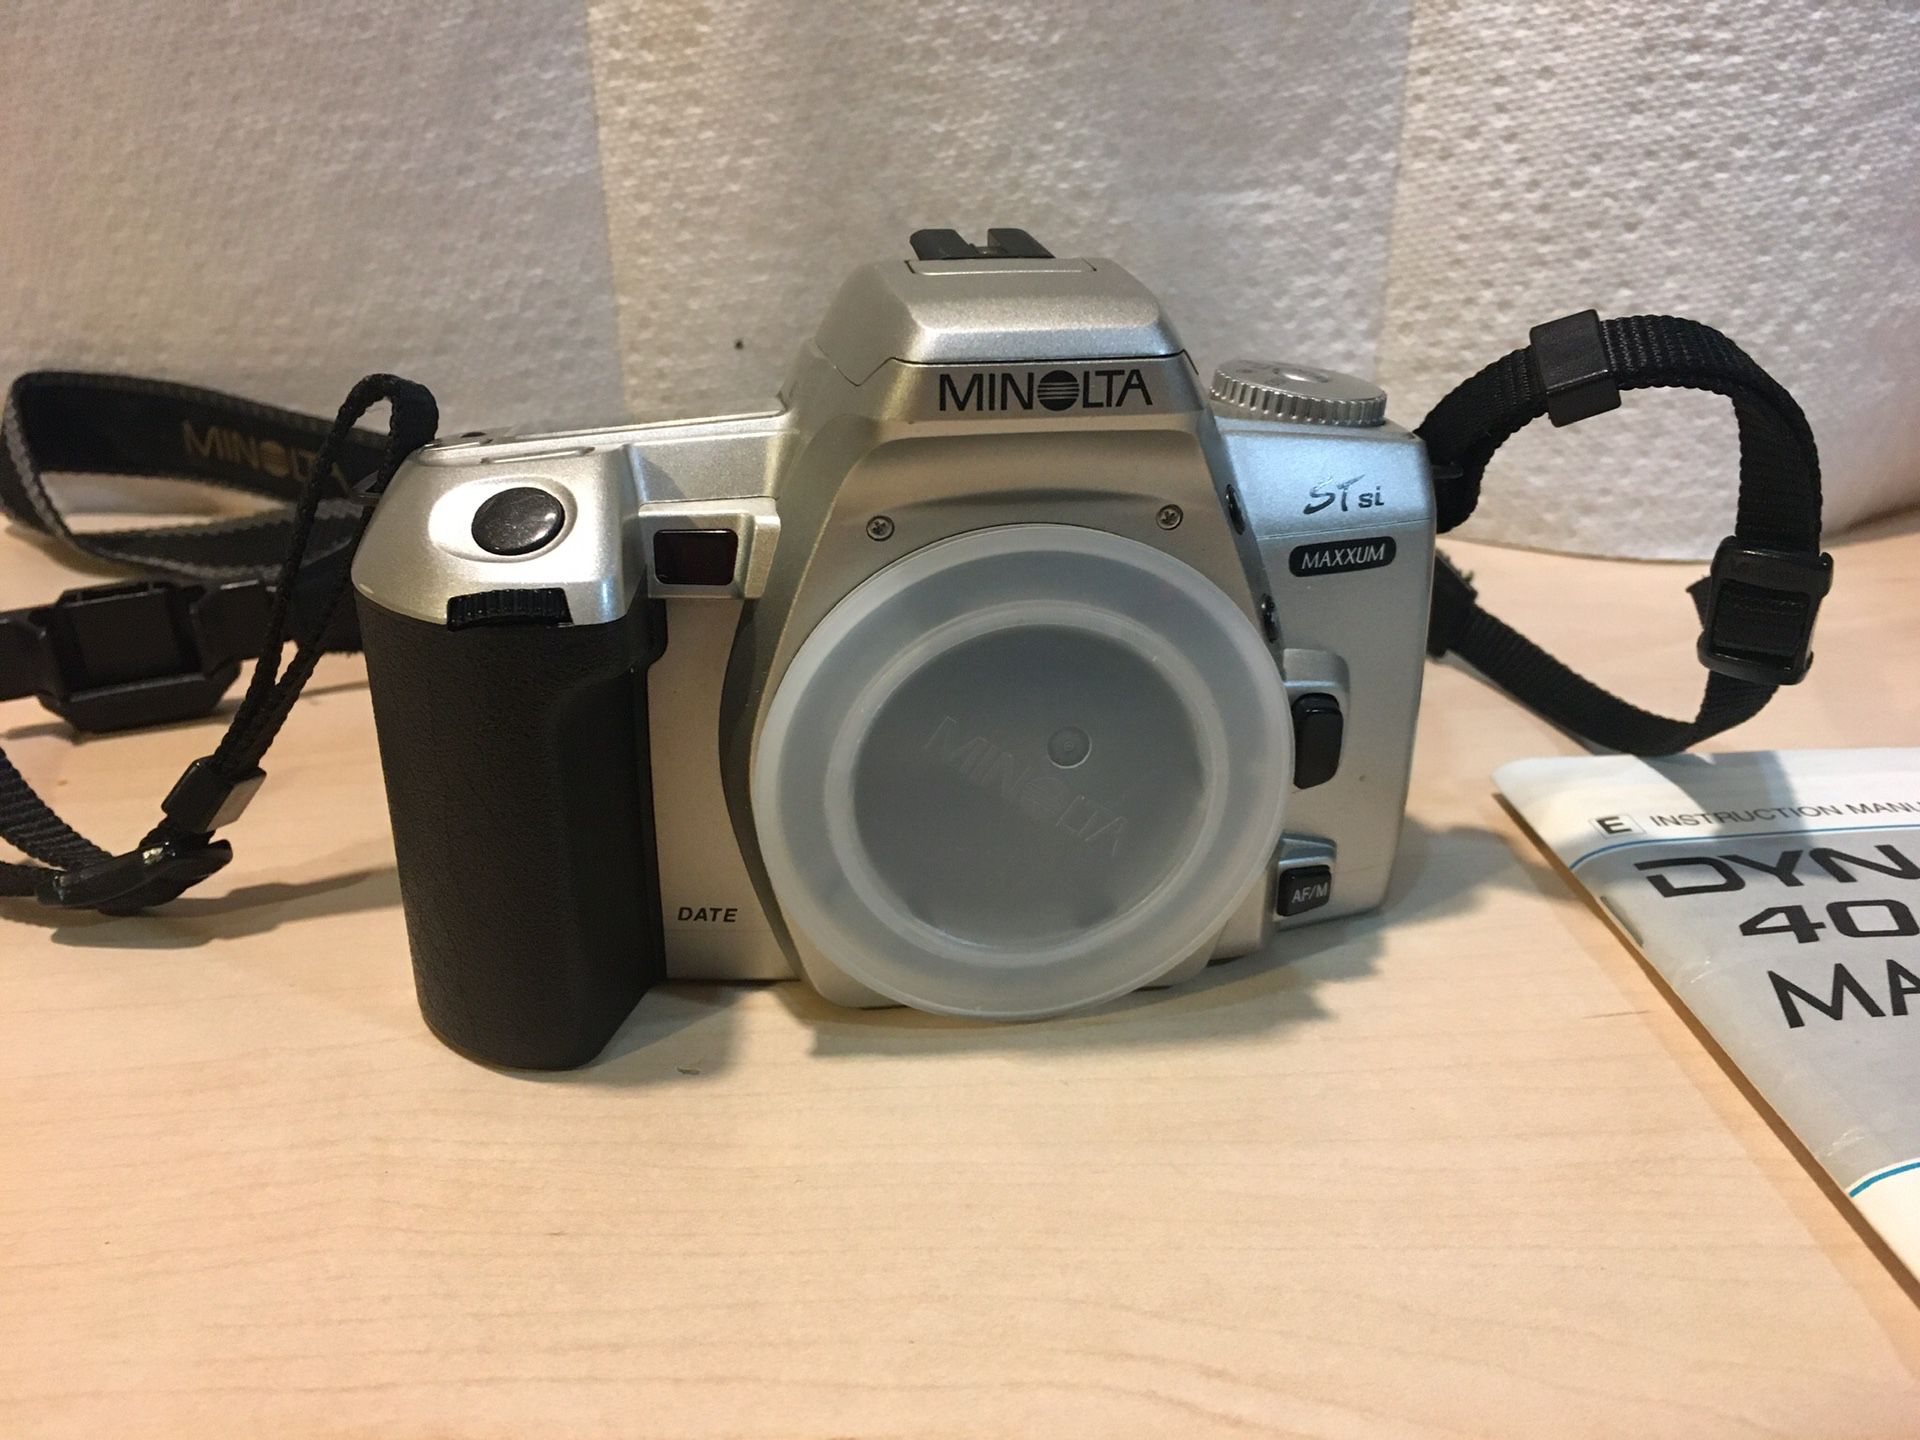 Minolta SLR camera